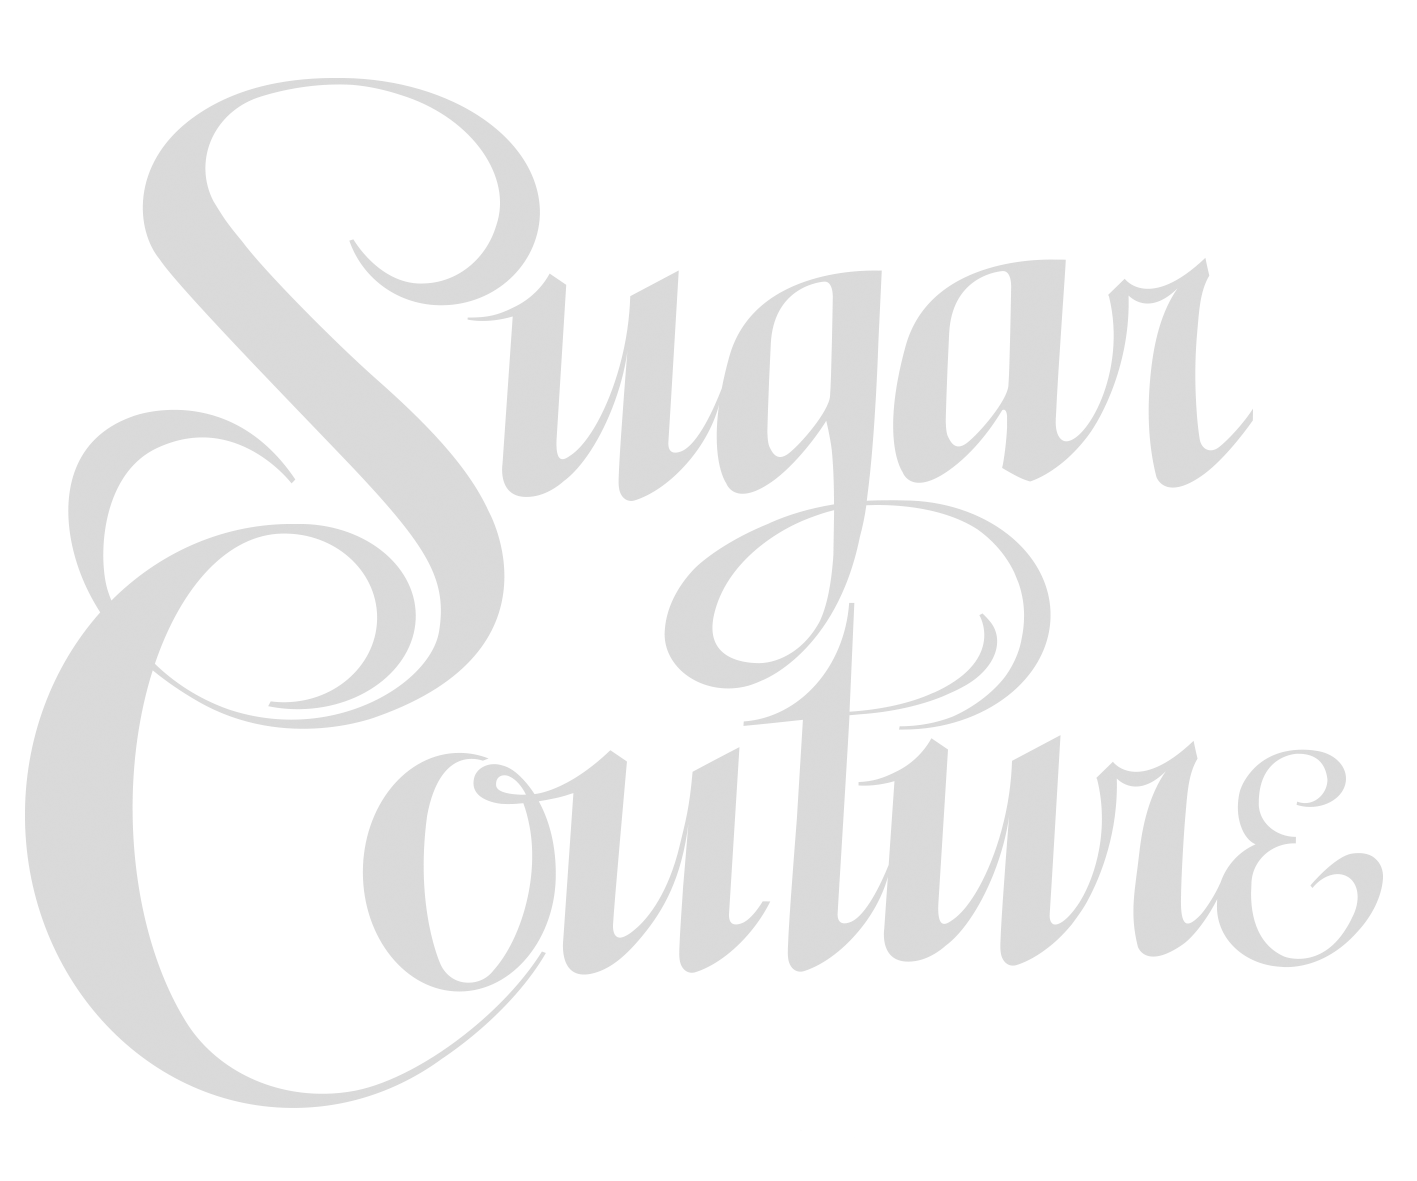 Sugar Couture